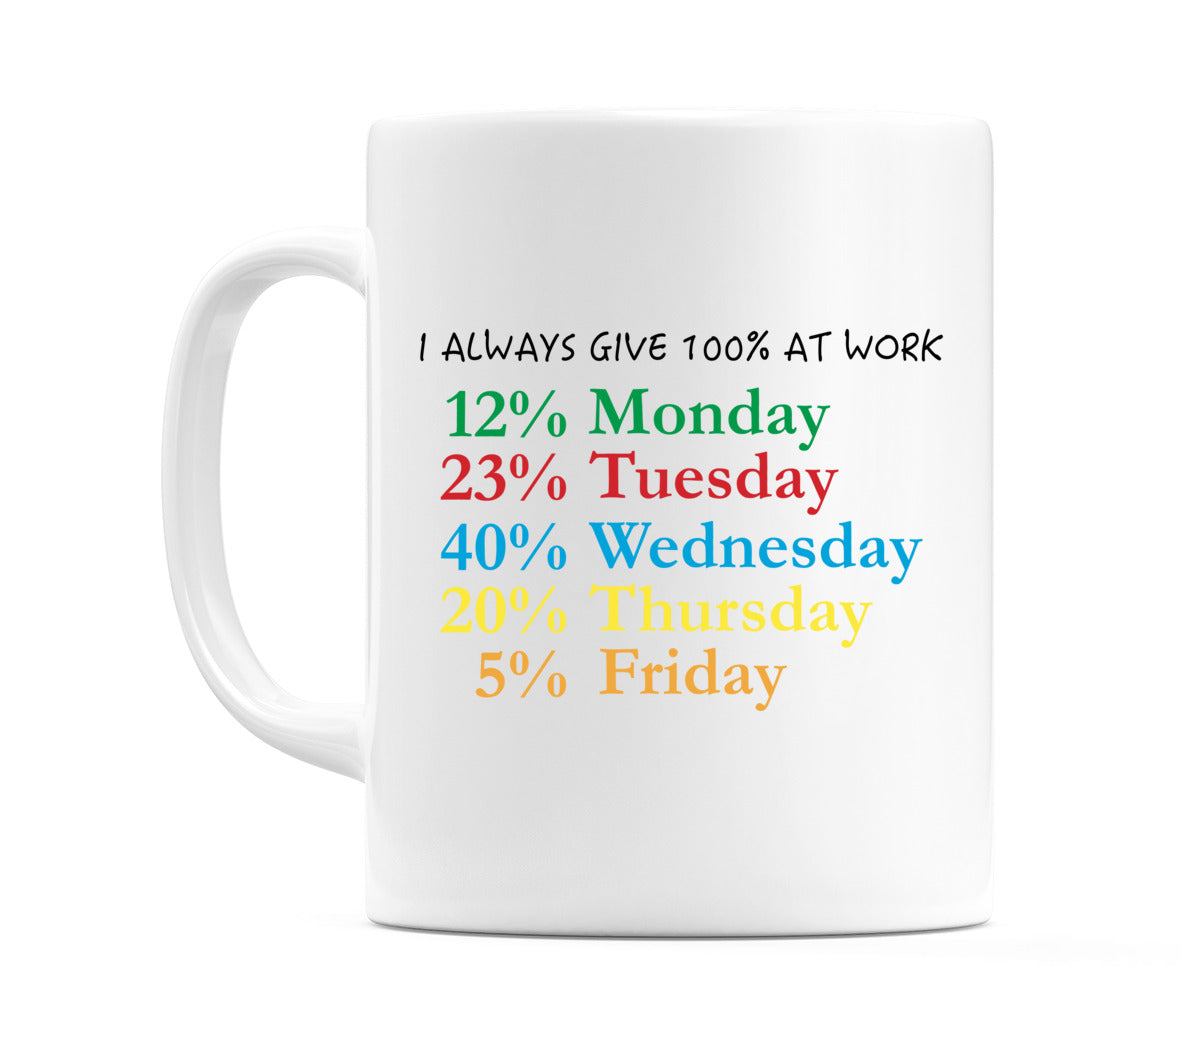 I Always Give 100% At Work Mug